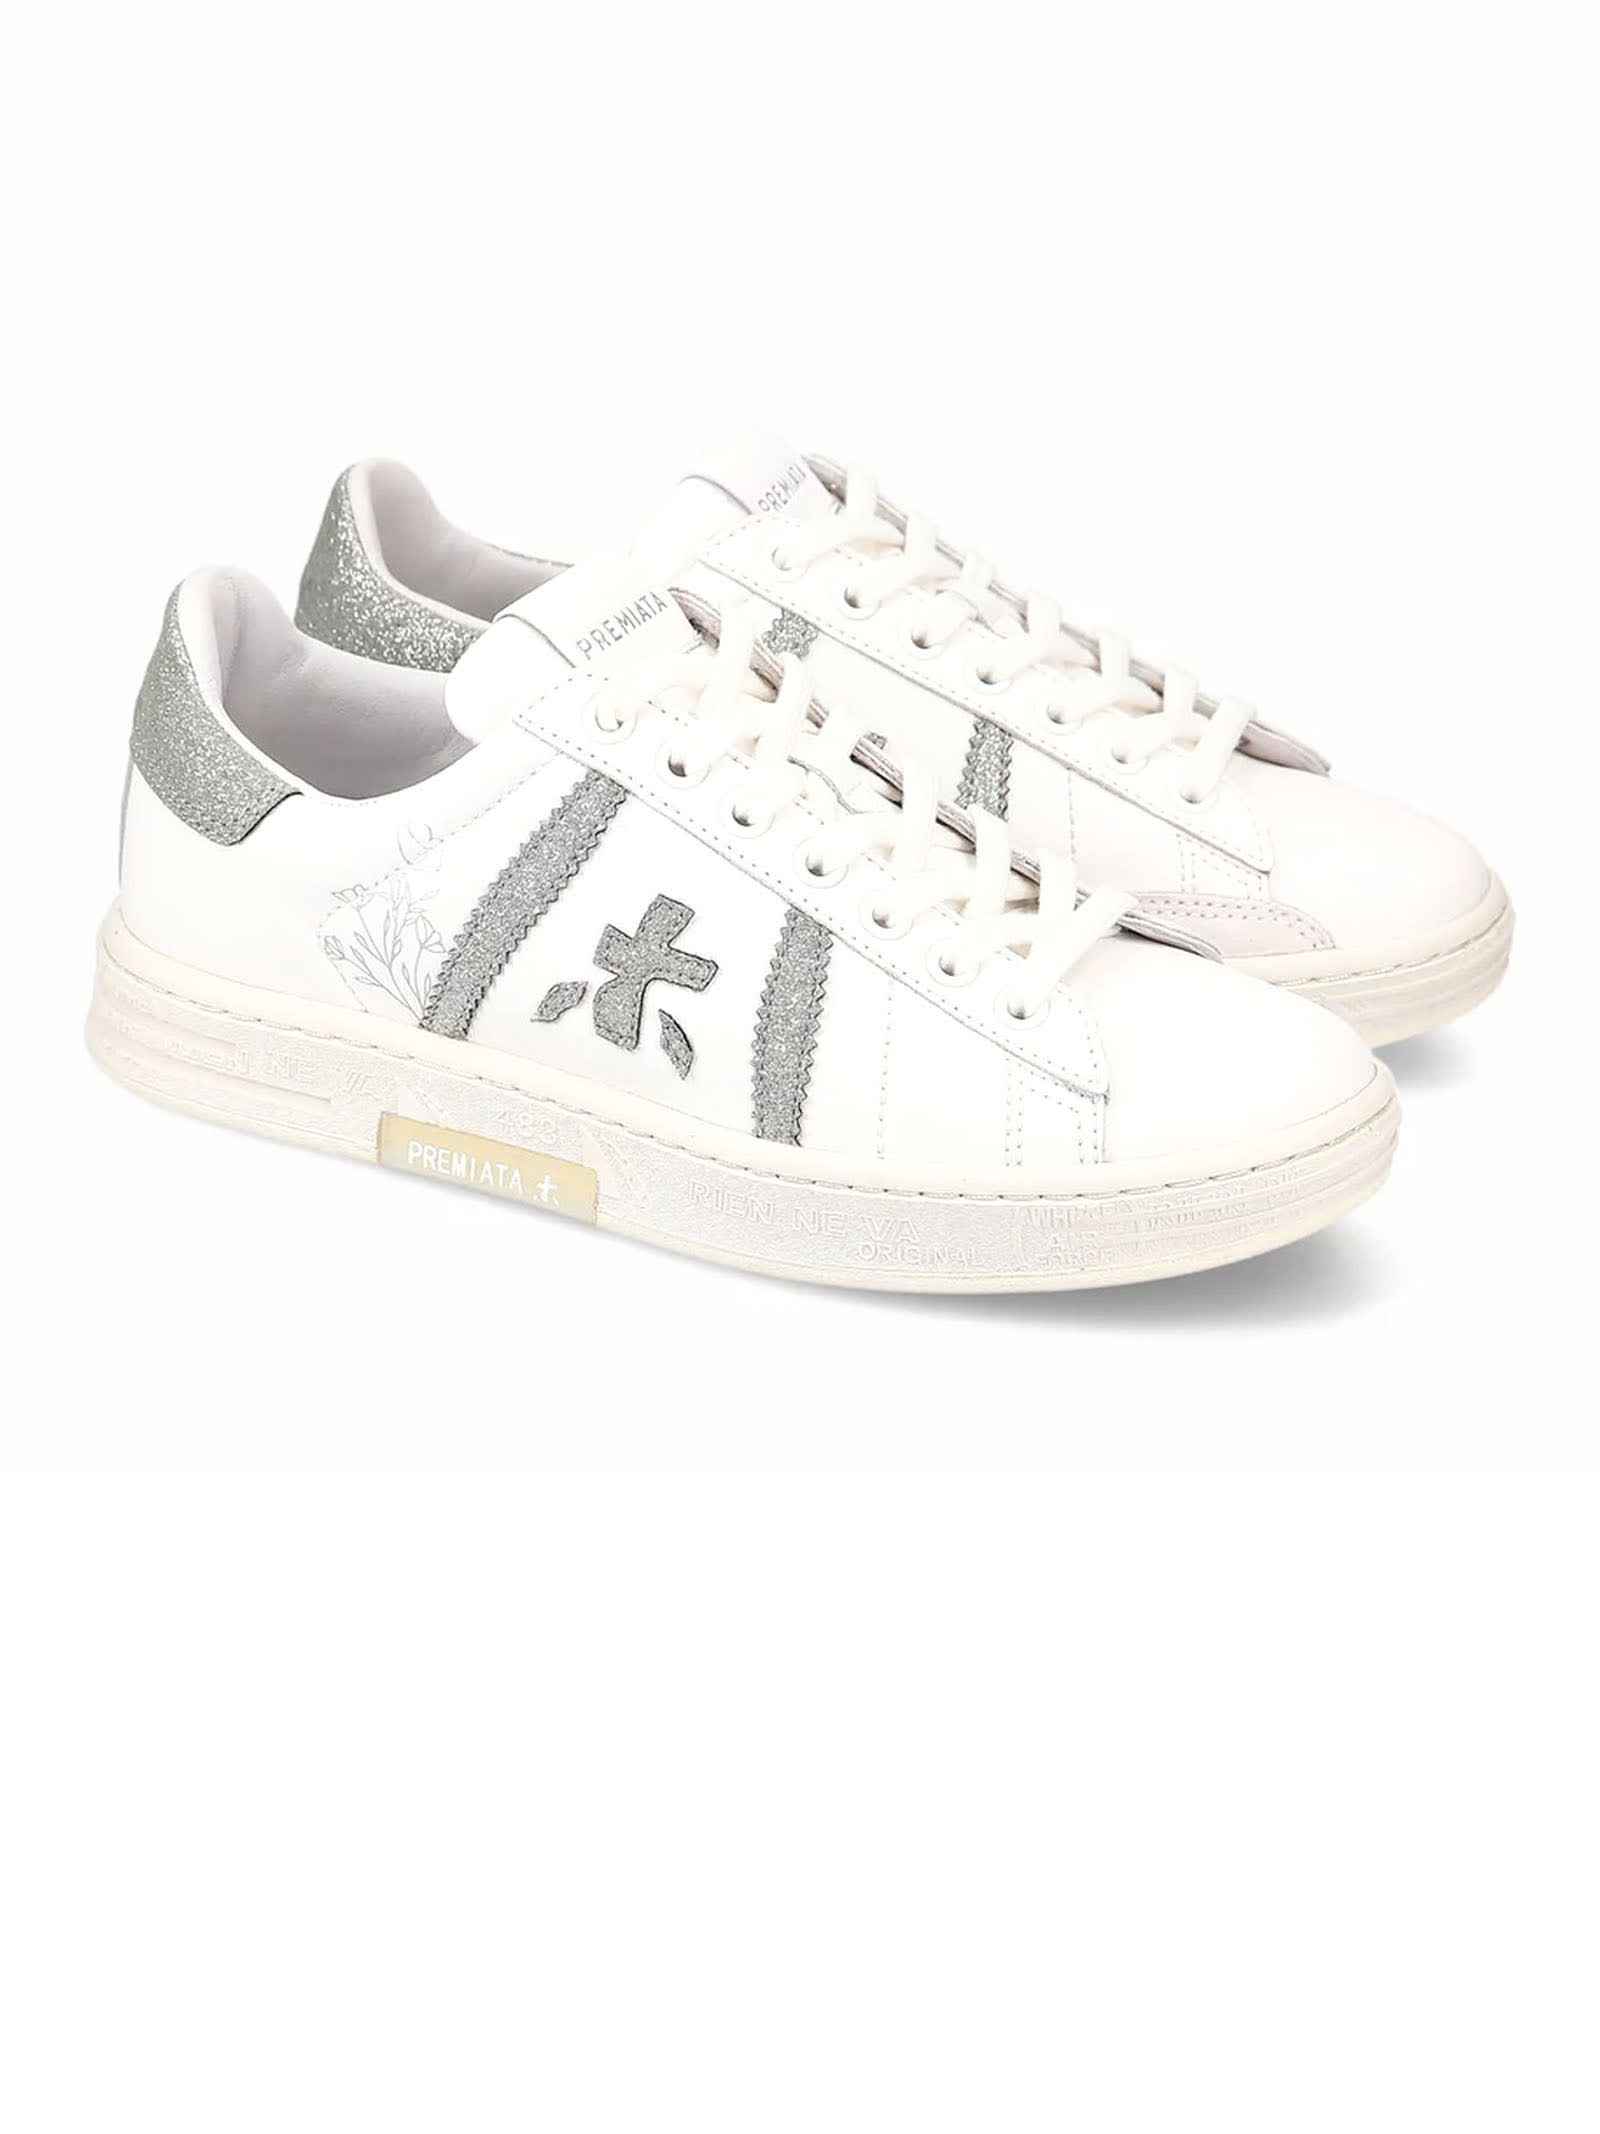 Shop Premiata Sneakers White In Bianco E Argento